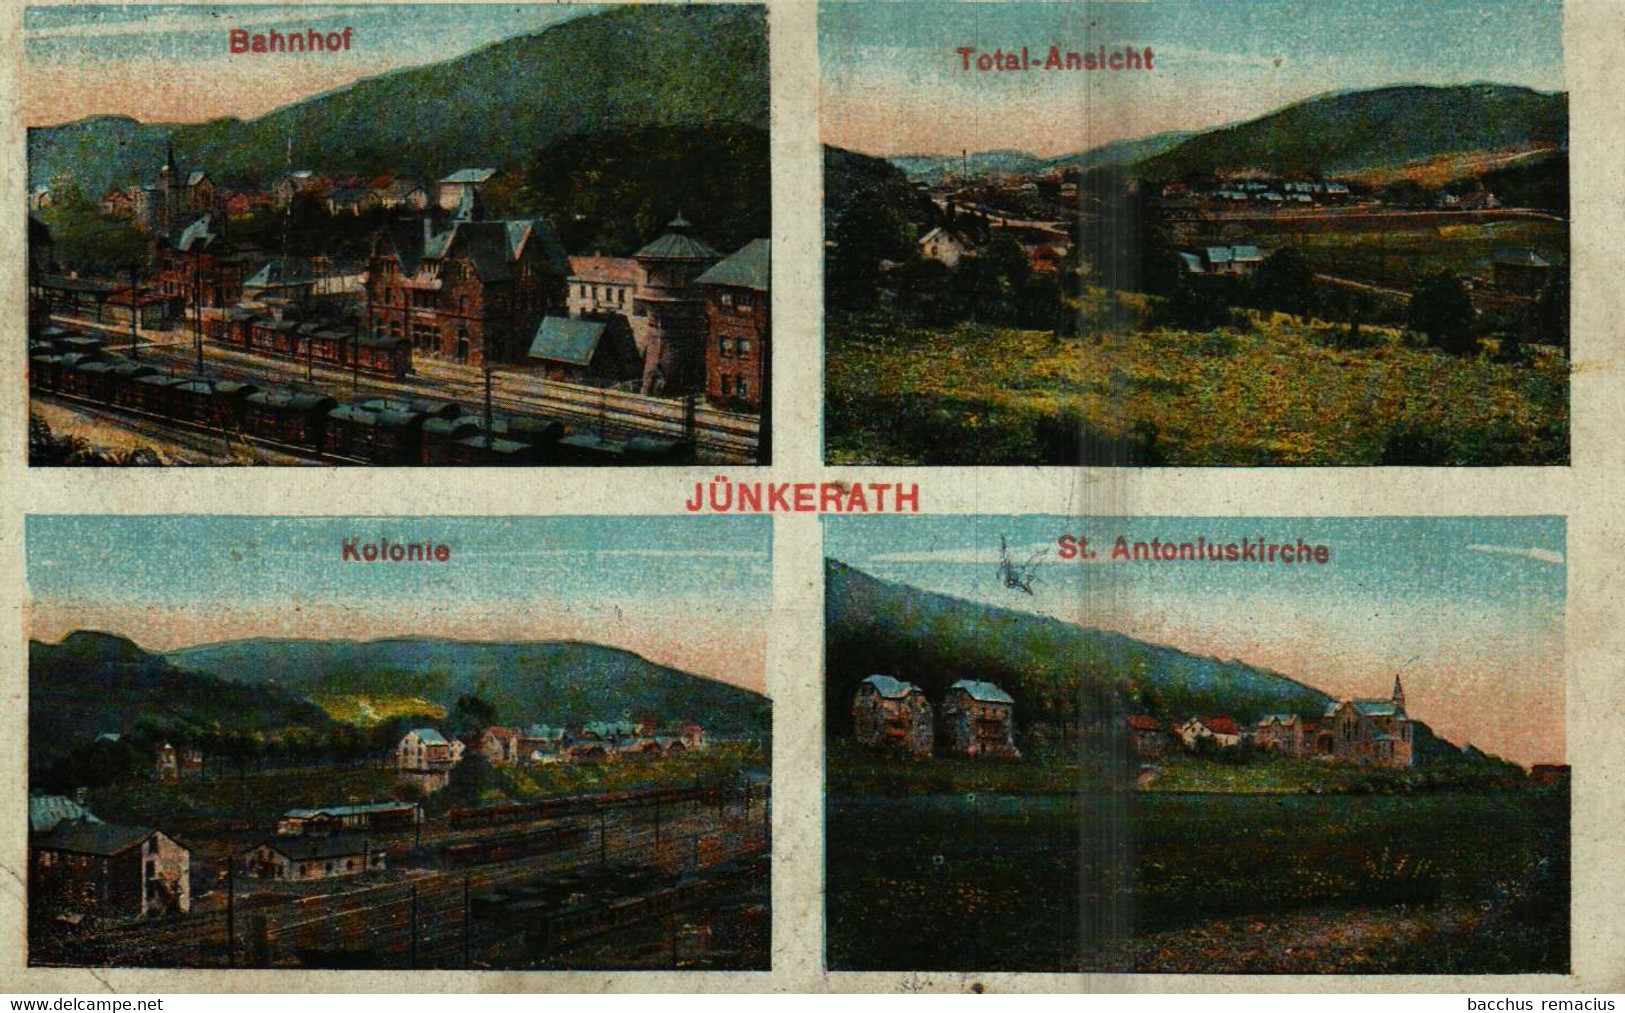 JÜNKERATH/Eifel 1. Bahnhof 2. Total-Ansicht 3. Kolonie 4. St.Antoniuskirche - Gerolstein